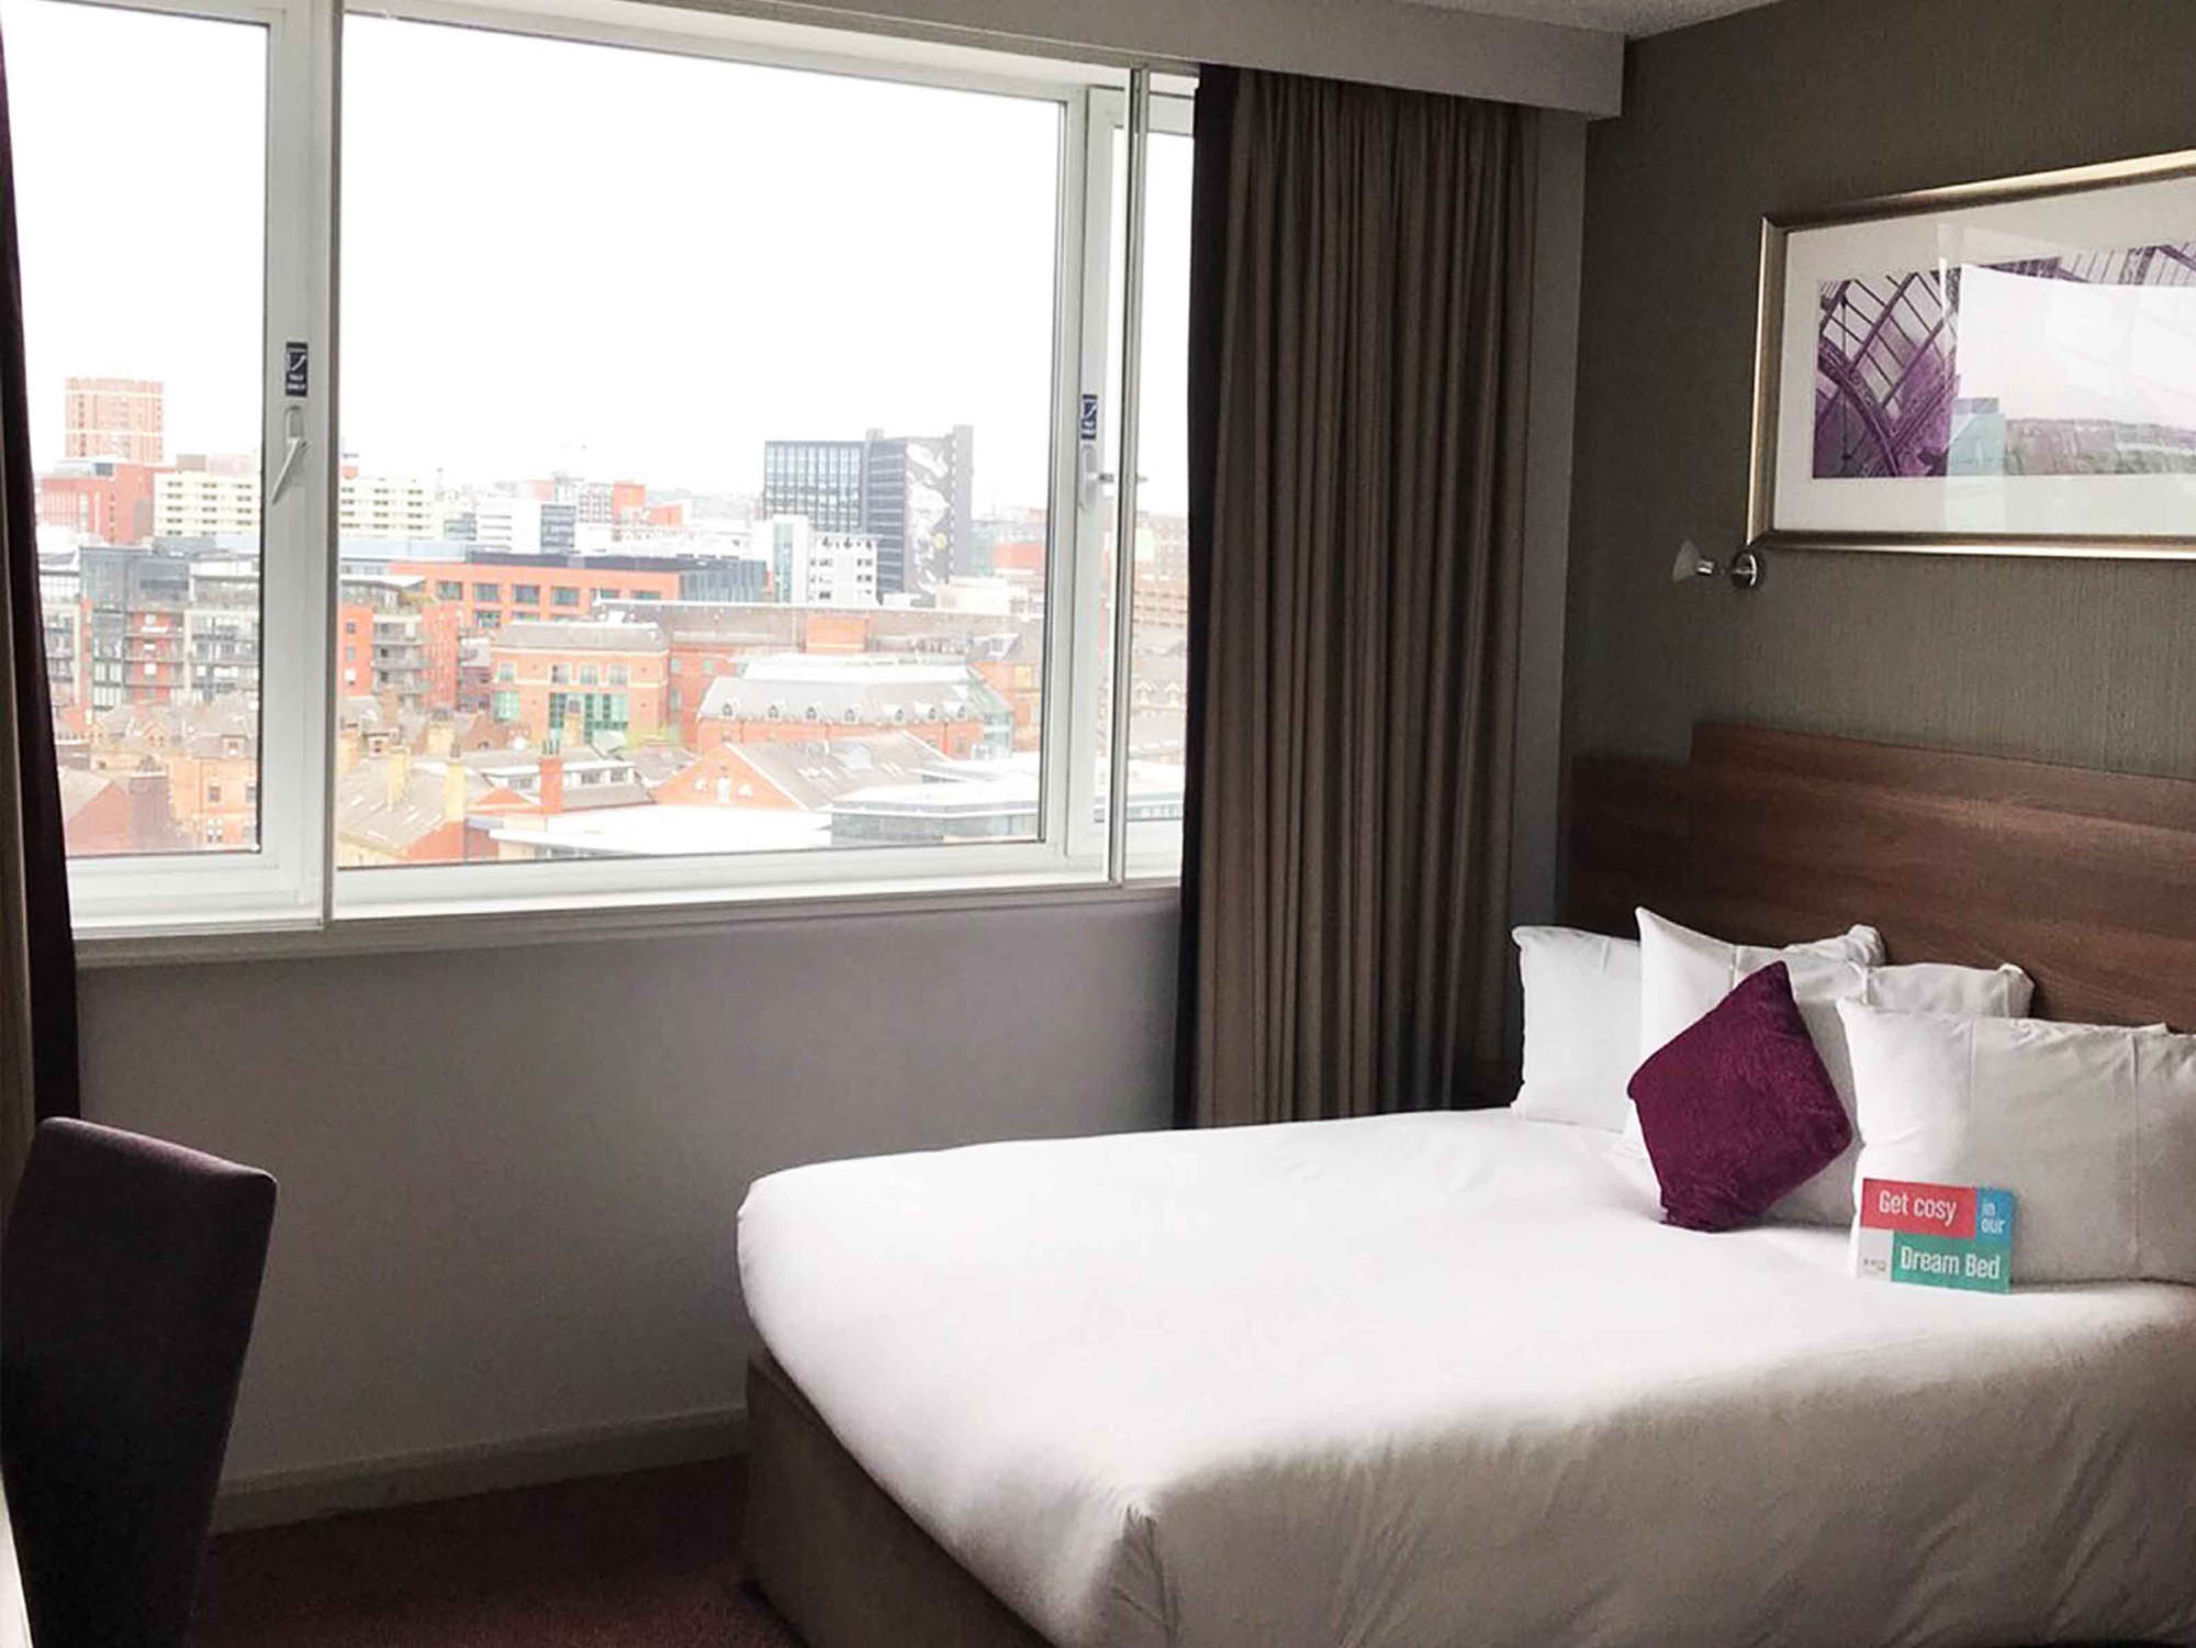 Best Hotels in Leeds - Jurys Inn Leeds